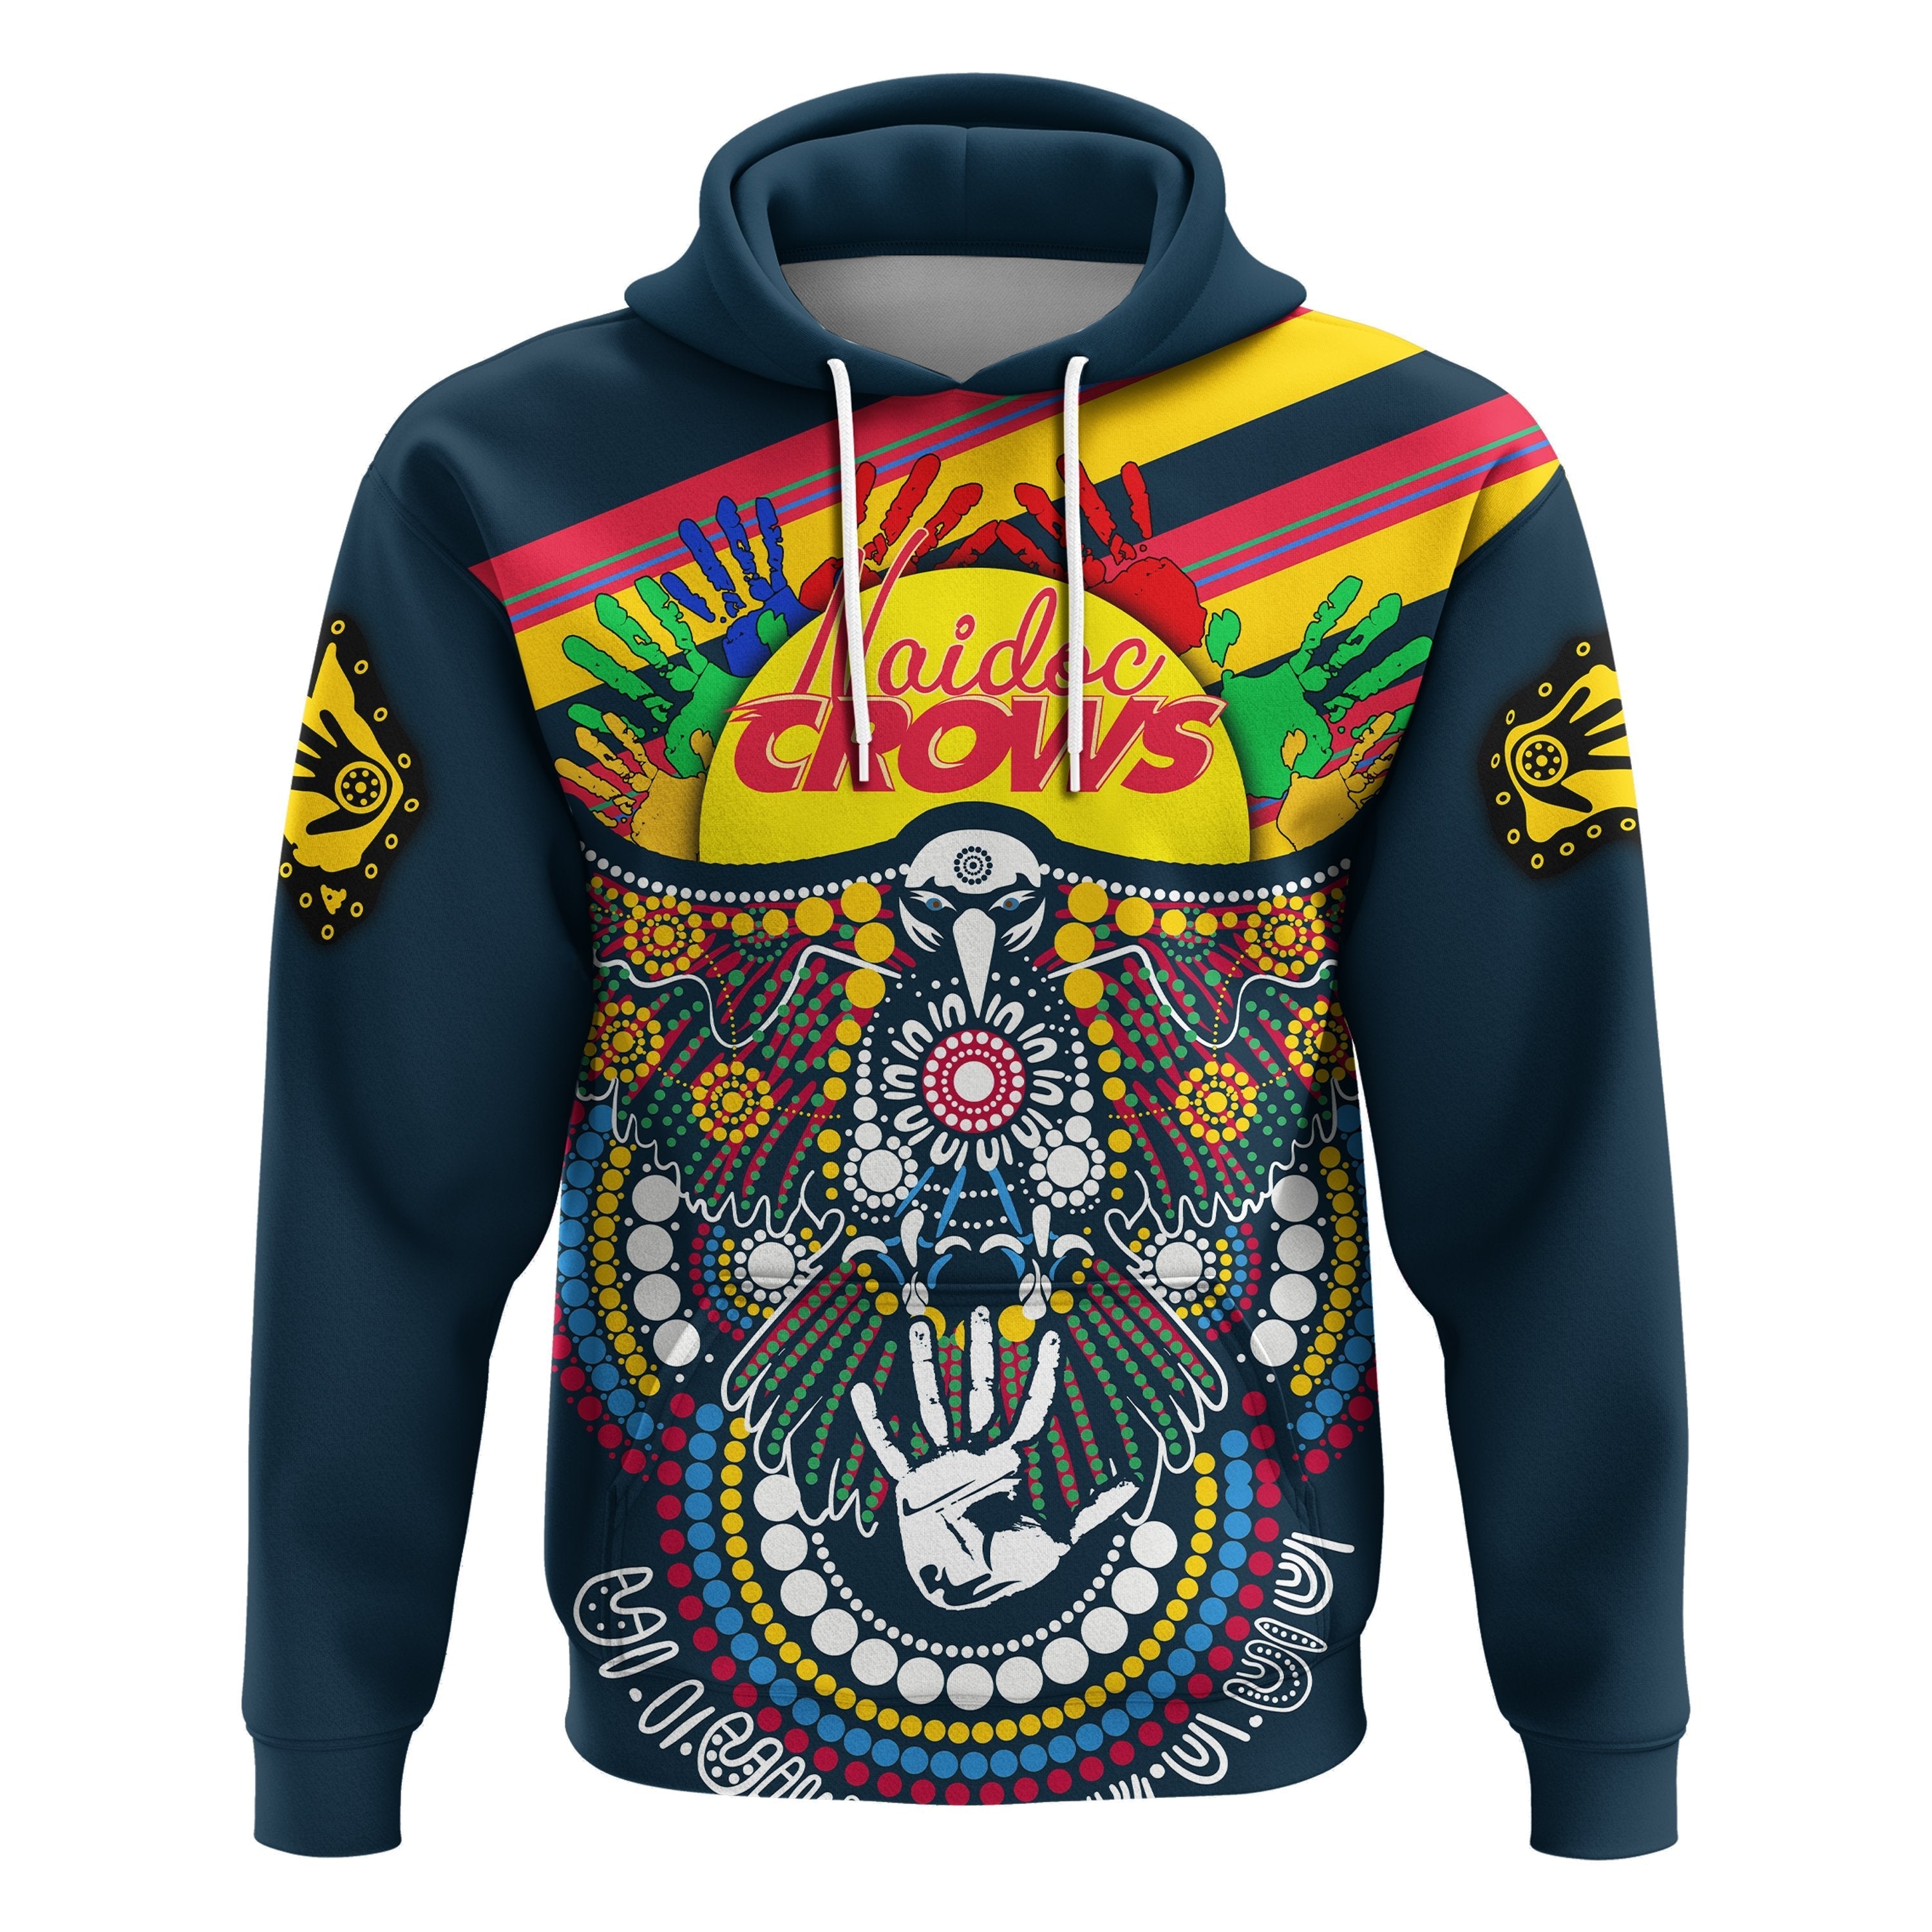 custom-personalised-adelaide-naidoc-week-hoodie-special-crows-aboriginal-sport-style